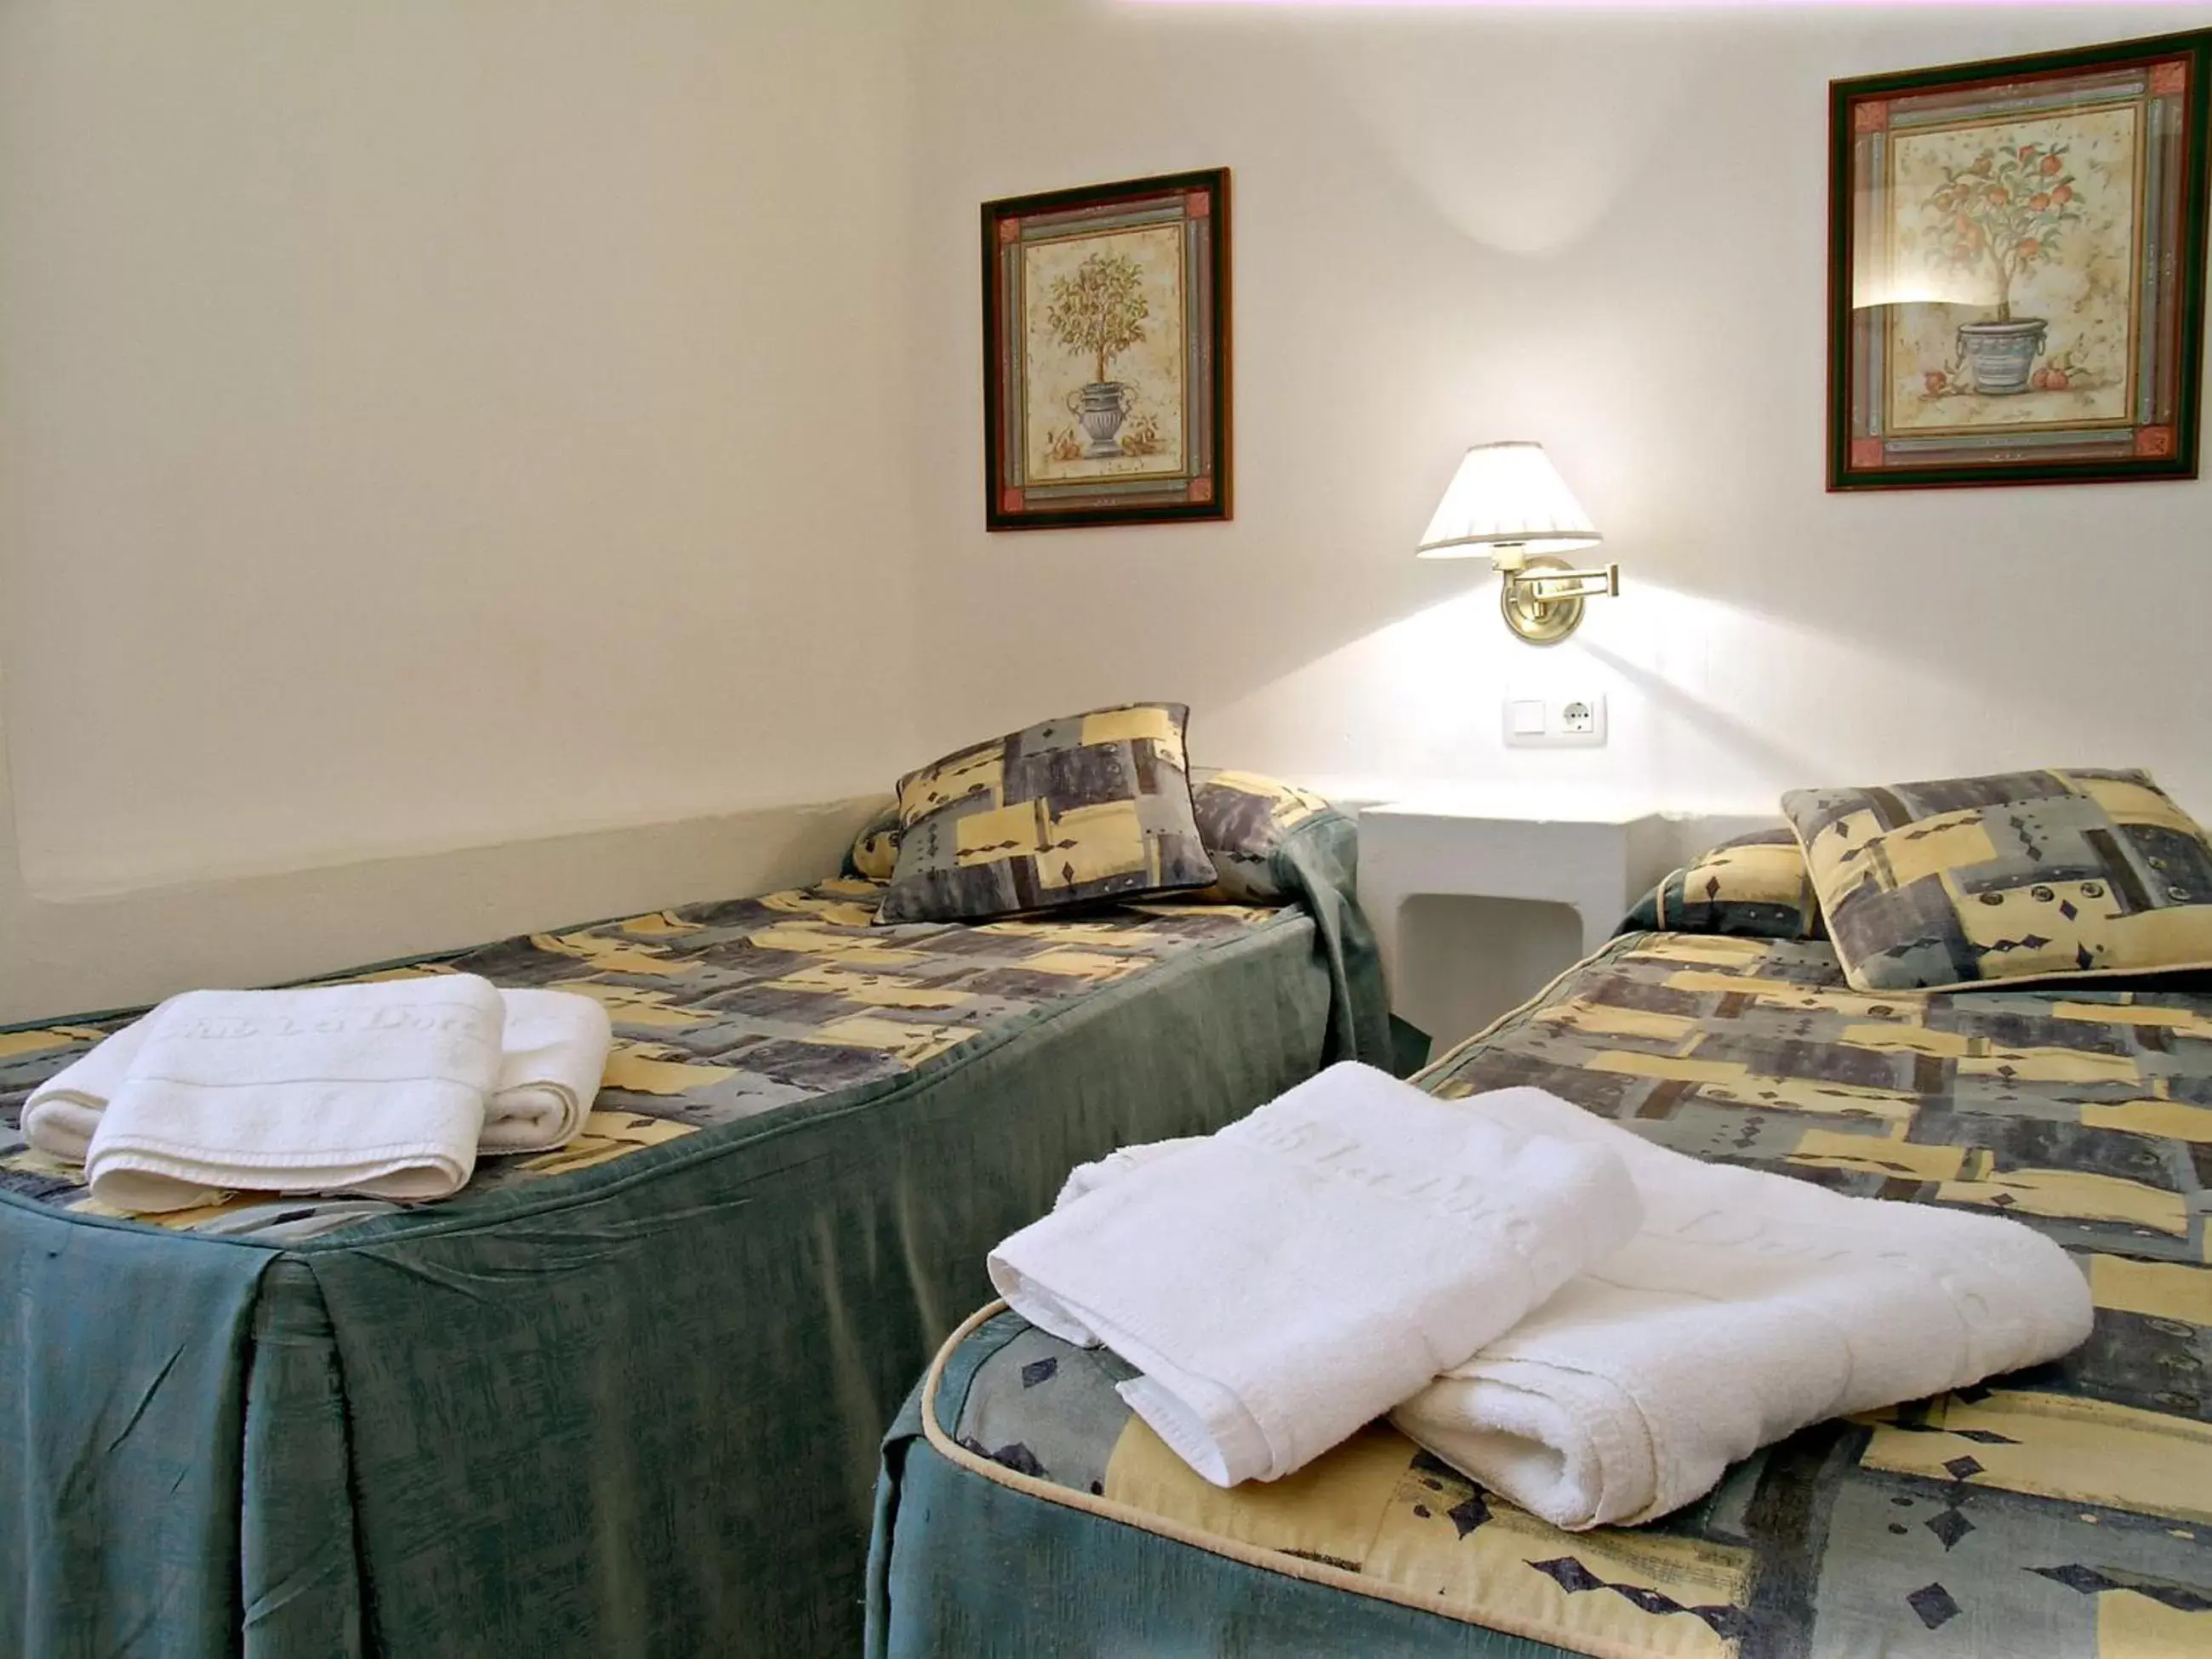 Bedroom, Room Photo in Ona Aldea del Mar